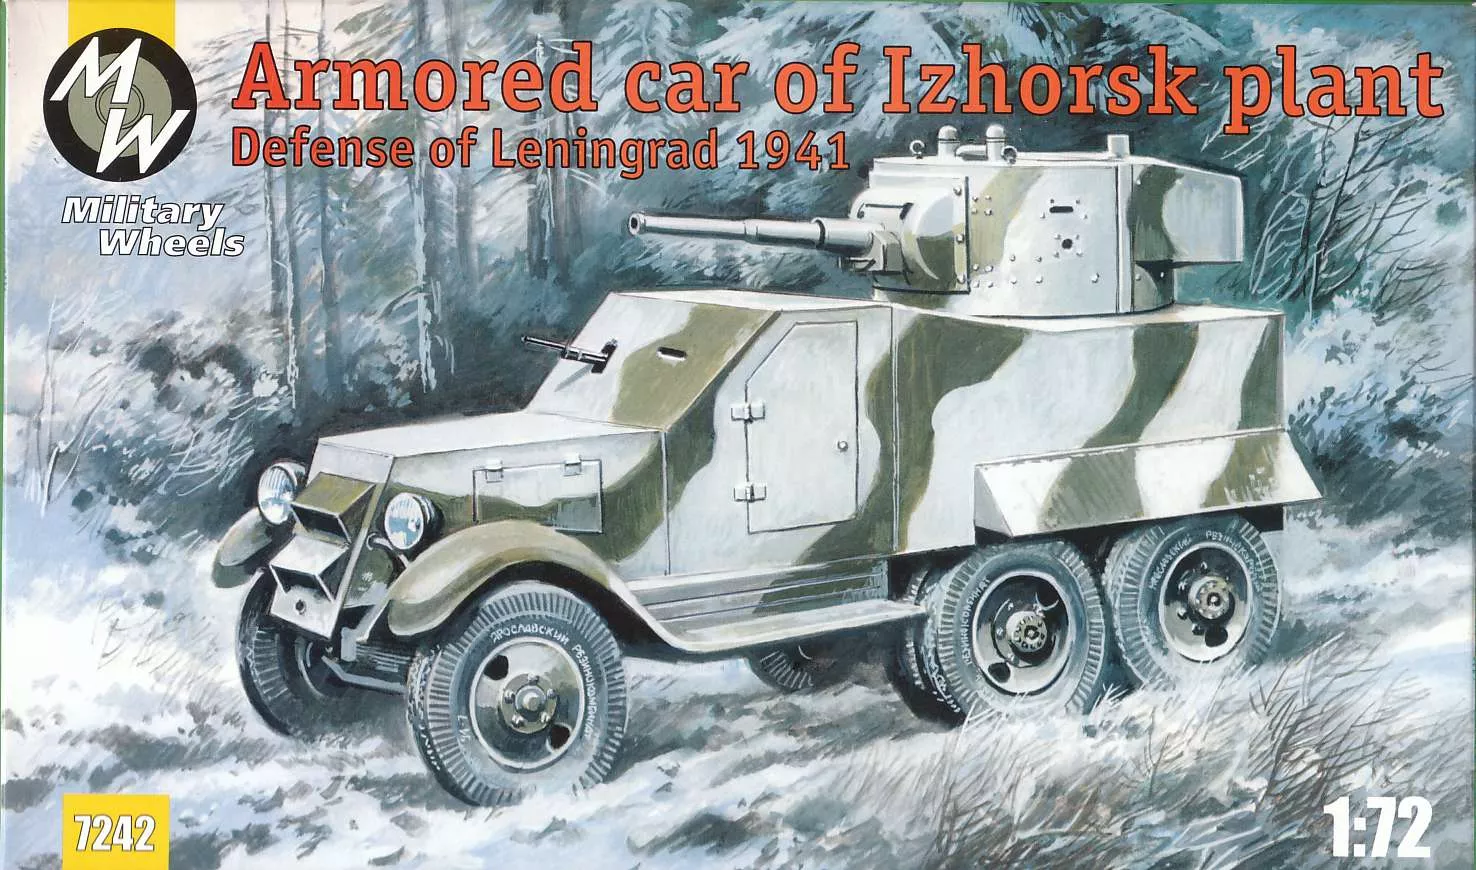 Military Wheels - Armored car of Izhorsk plant, Leningrad 